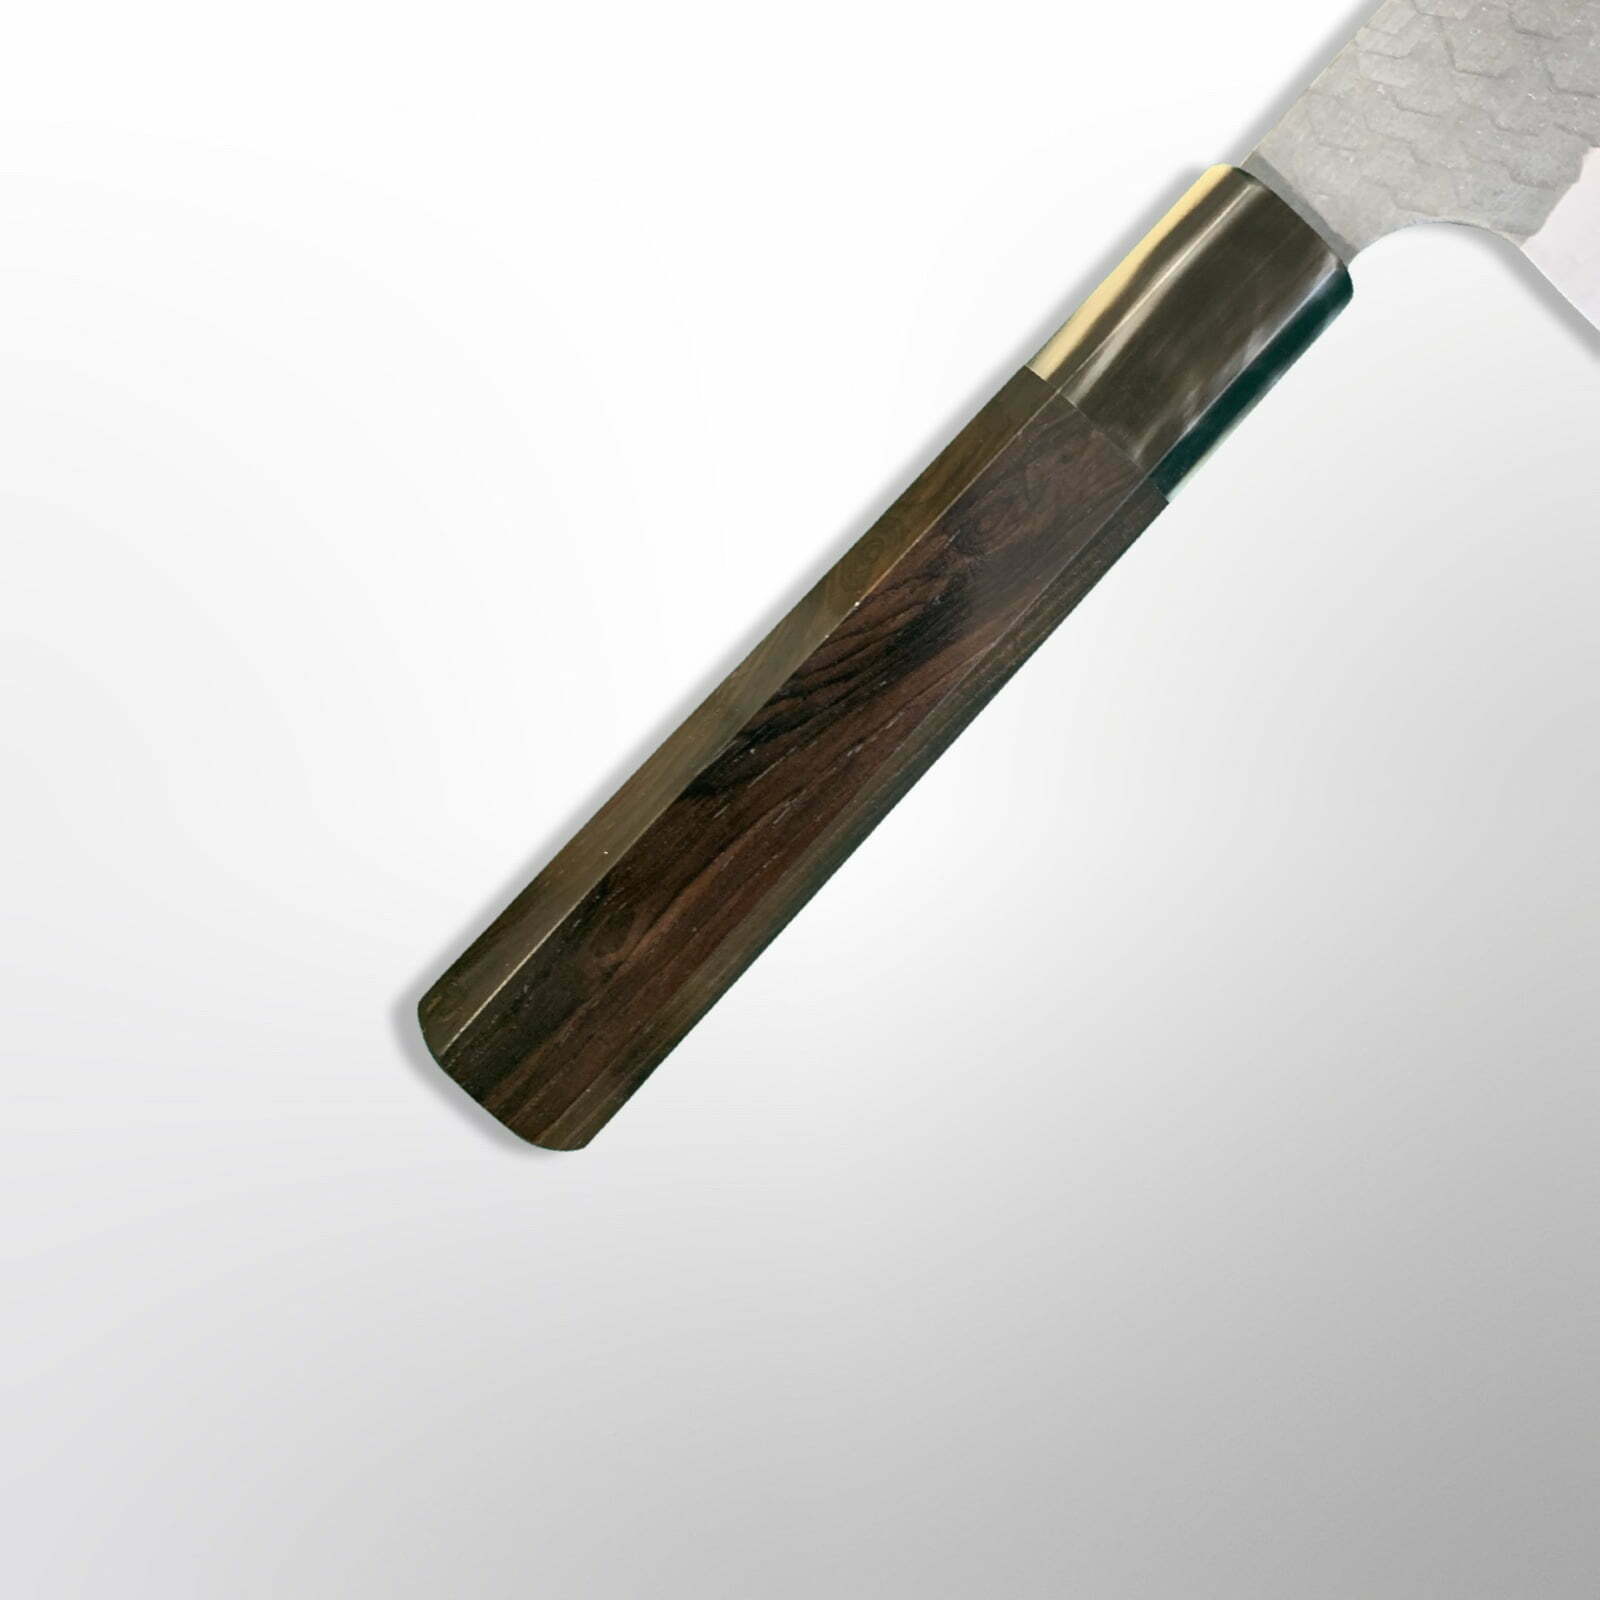 סכין רב-תכליתית בּוּנְקָה 165מ״מ מחושלת בעבודת יד 3 שכבות: פלדת פחמן יפנית מתקדמת מסוג R2/SG2 עטופה פלדת אל-חלד גימור קורואיצ׳י שחור עם ריקוע פטיש ניגארה יפן SKNIGASG2KDB18016